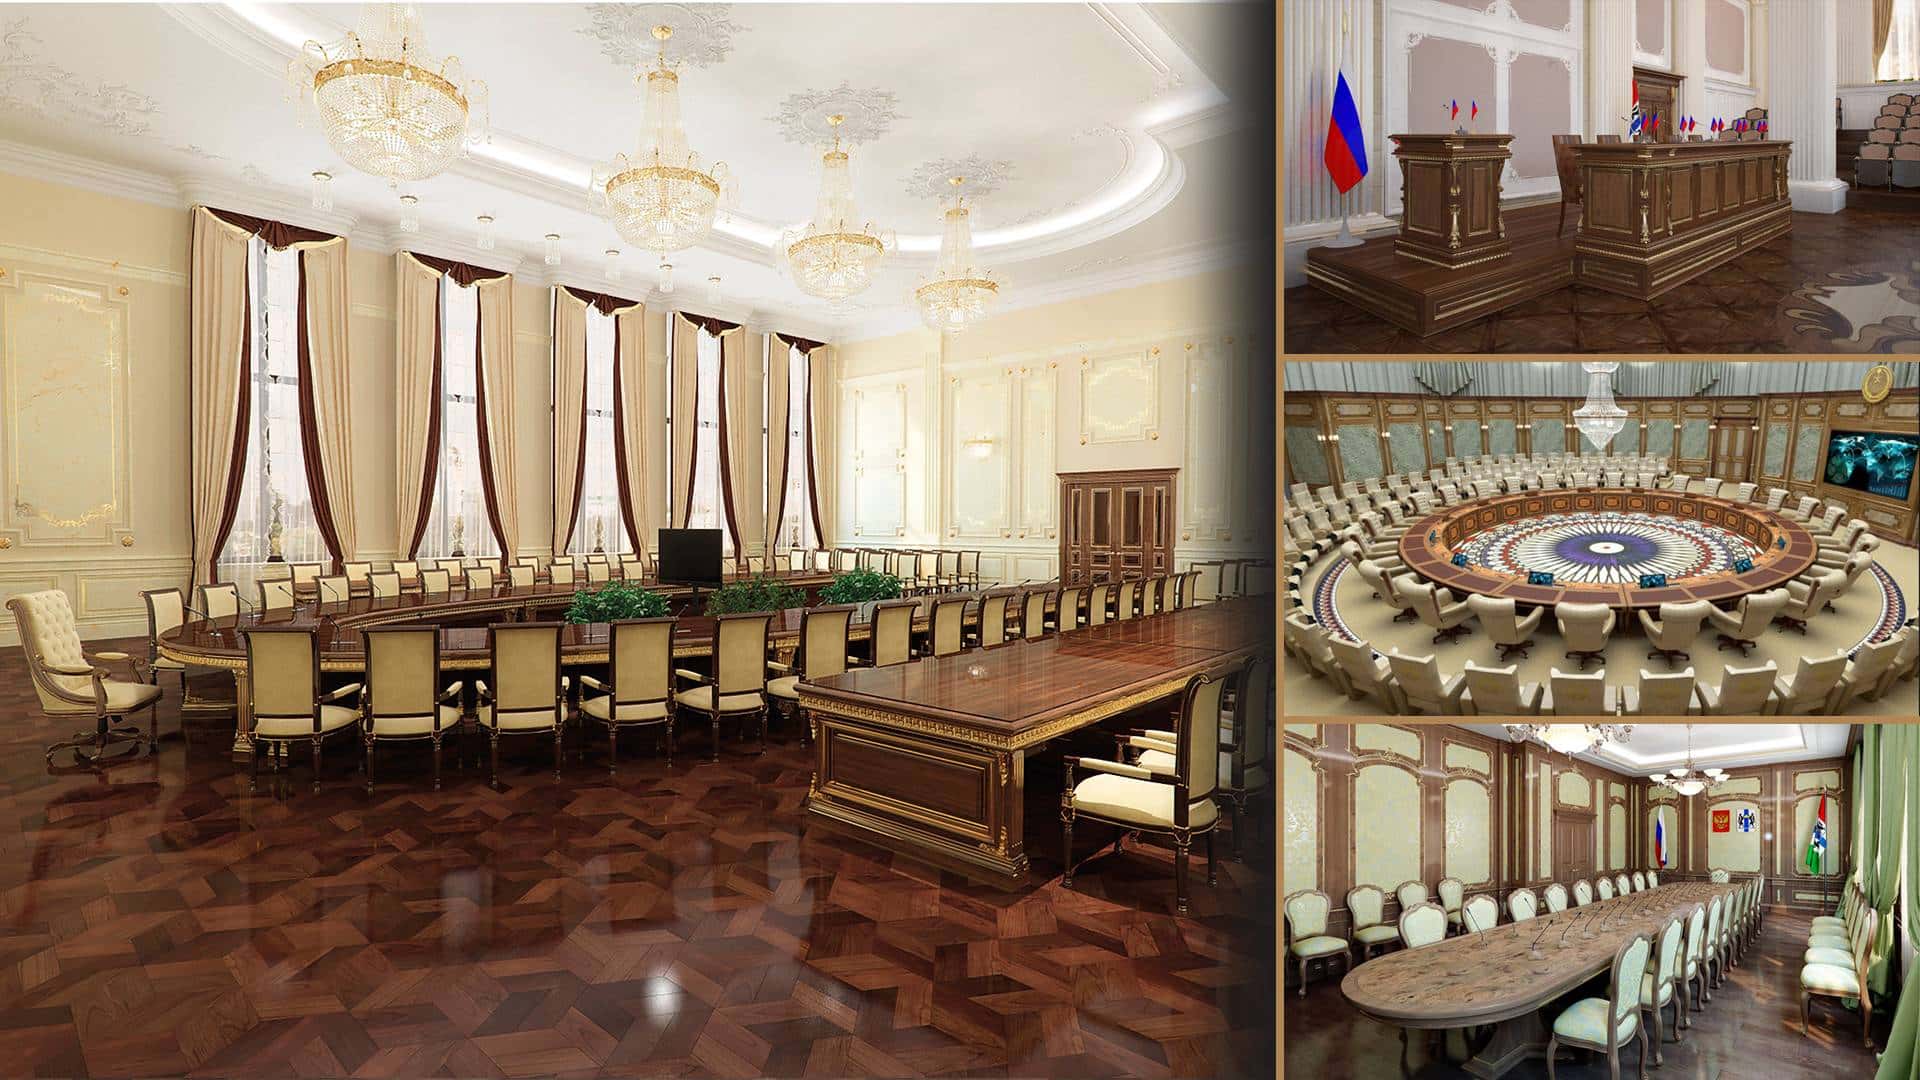 projets de bureaux gouvernementaux ambassades bureau du président aménagement sur mesure production de meubles classique luxe classe royale